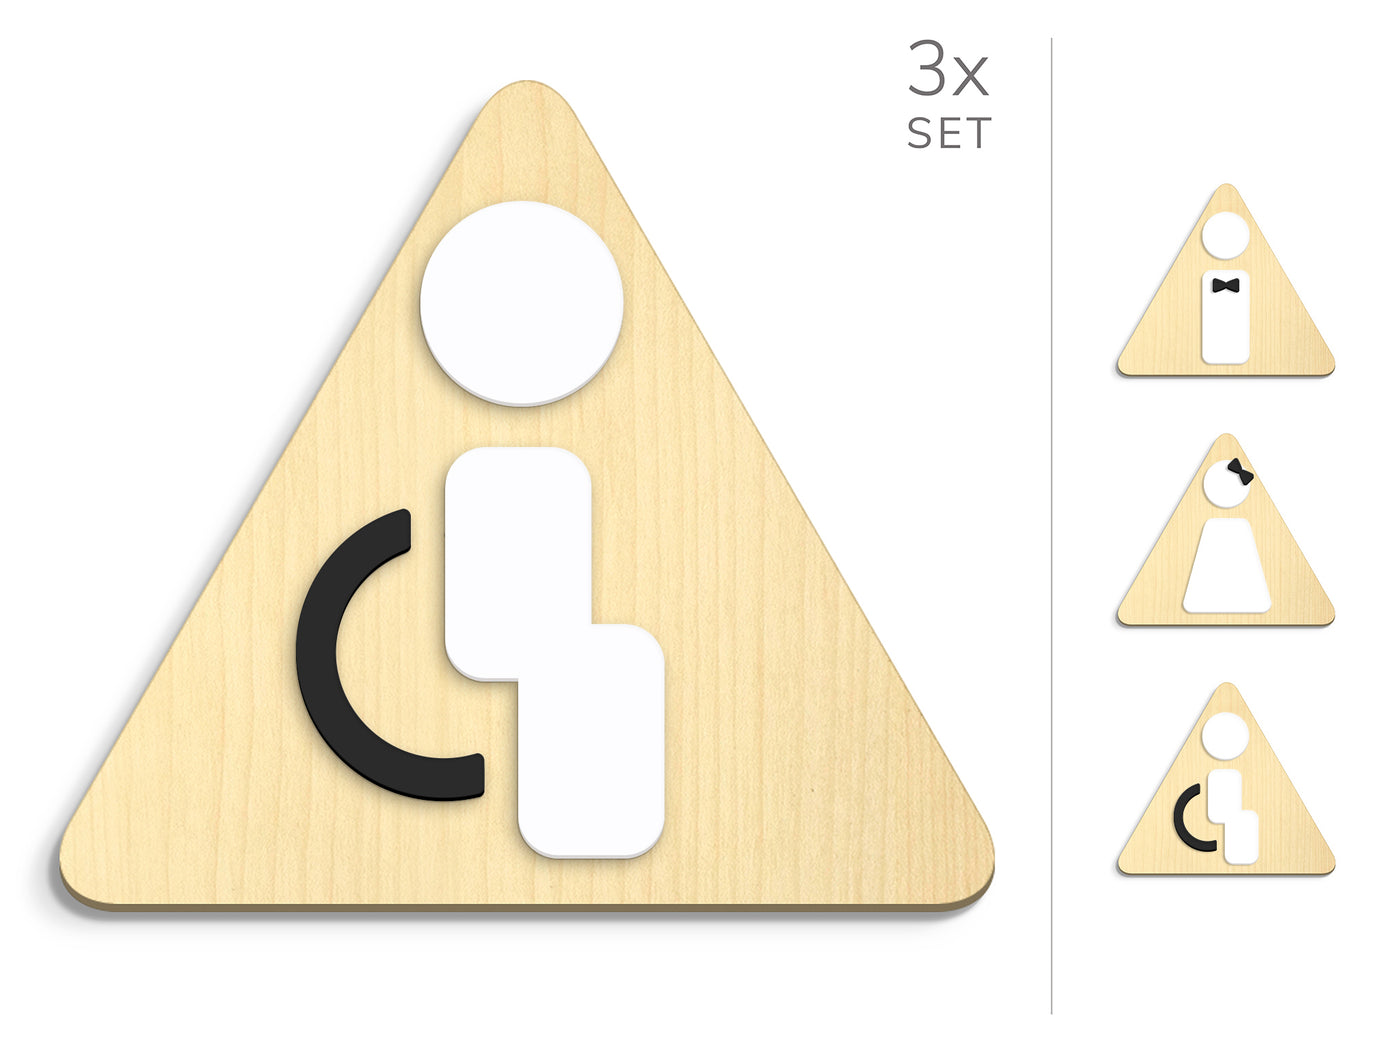 Styled knot, 3x Base Triangulaire - Jeu Panneau de signalisation toilettes, signalétique sanitaires - Homme, Femme, Handicapé